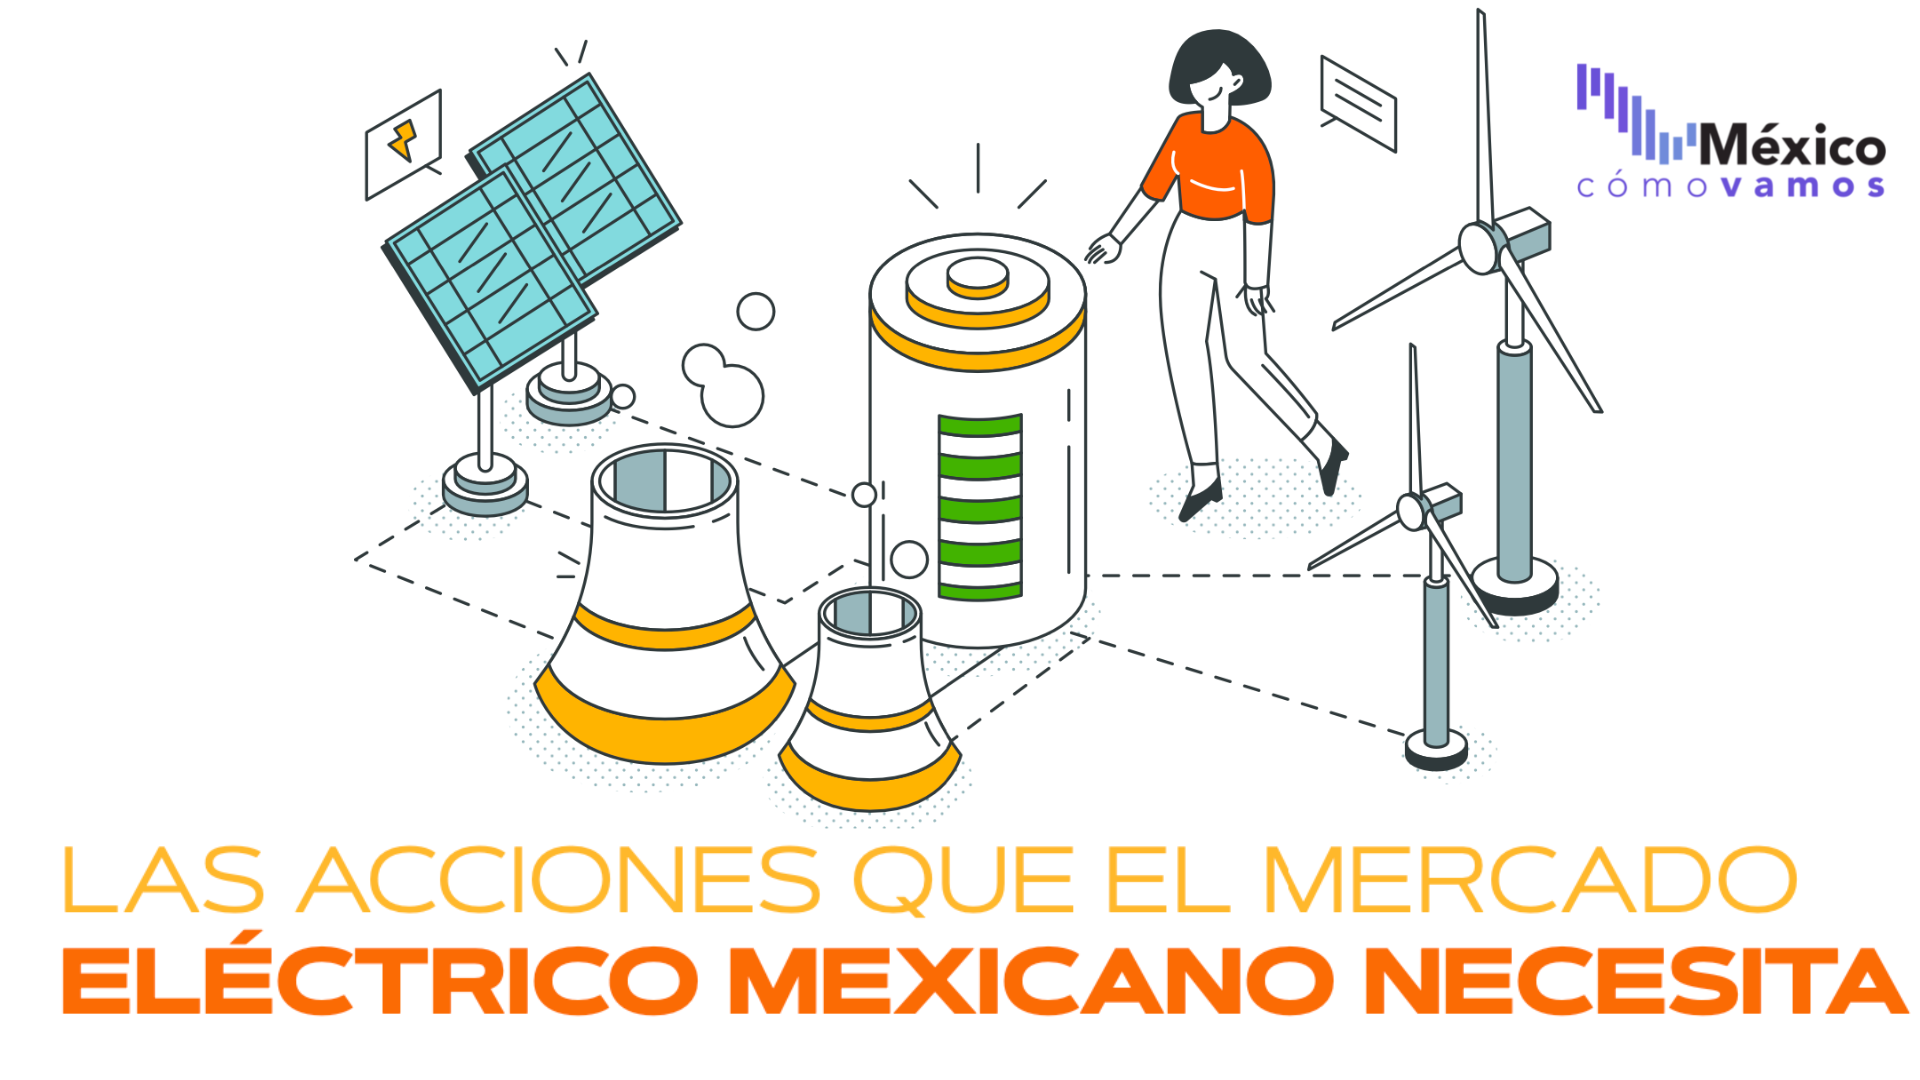 Las acciones que el mercado eléctrico mexicano necesita